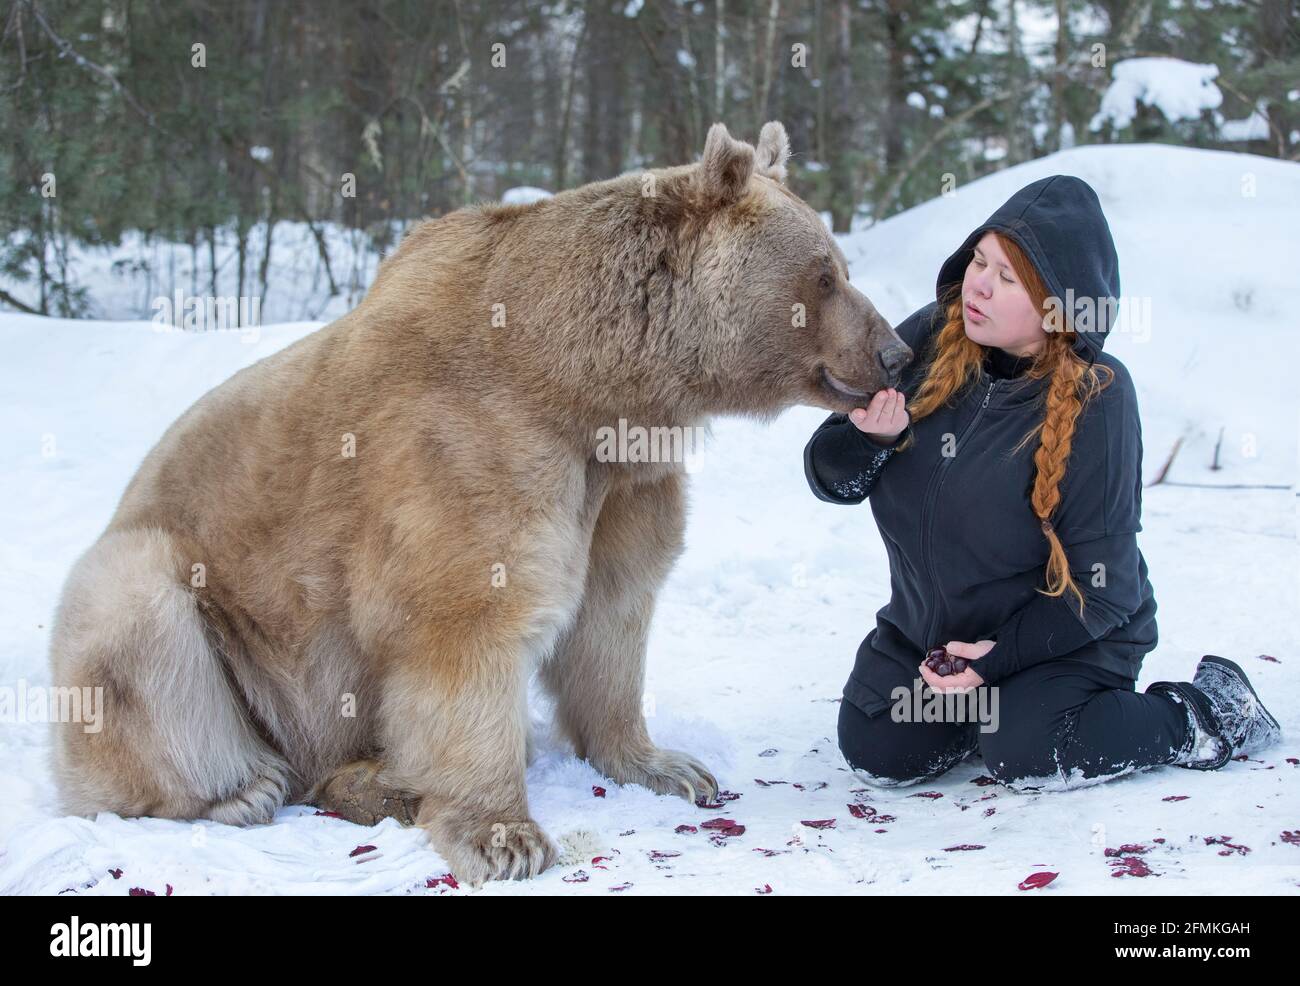 Fotografin Mila Zhdanova mit dem Bären Stepan. MOSKAU, RUSSLAND: TREFFEN SIE DEN echten Bären, der von seiner Mutter verlassen und von Menschen aufgezogen wurde, die jetzt einen Flo haben Stockfoto